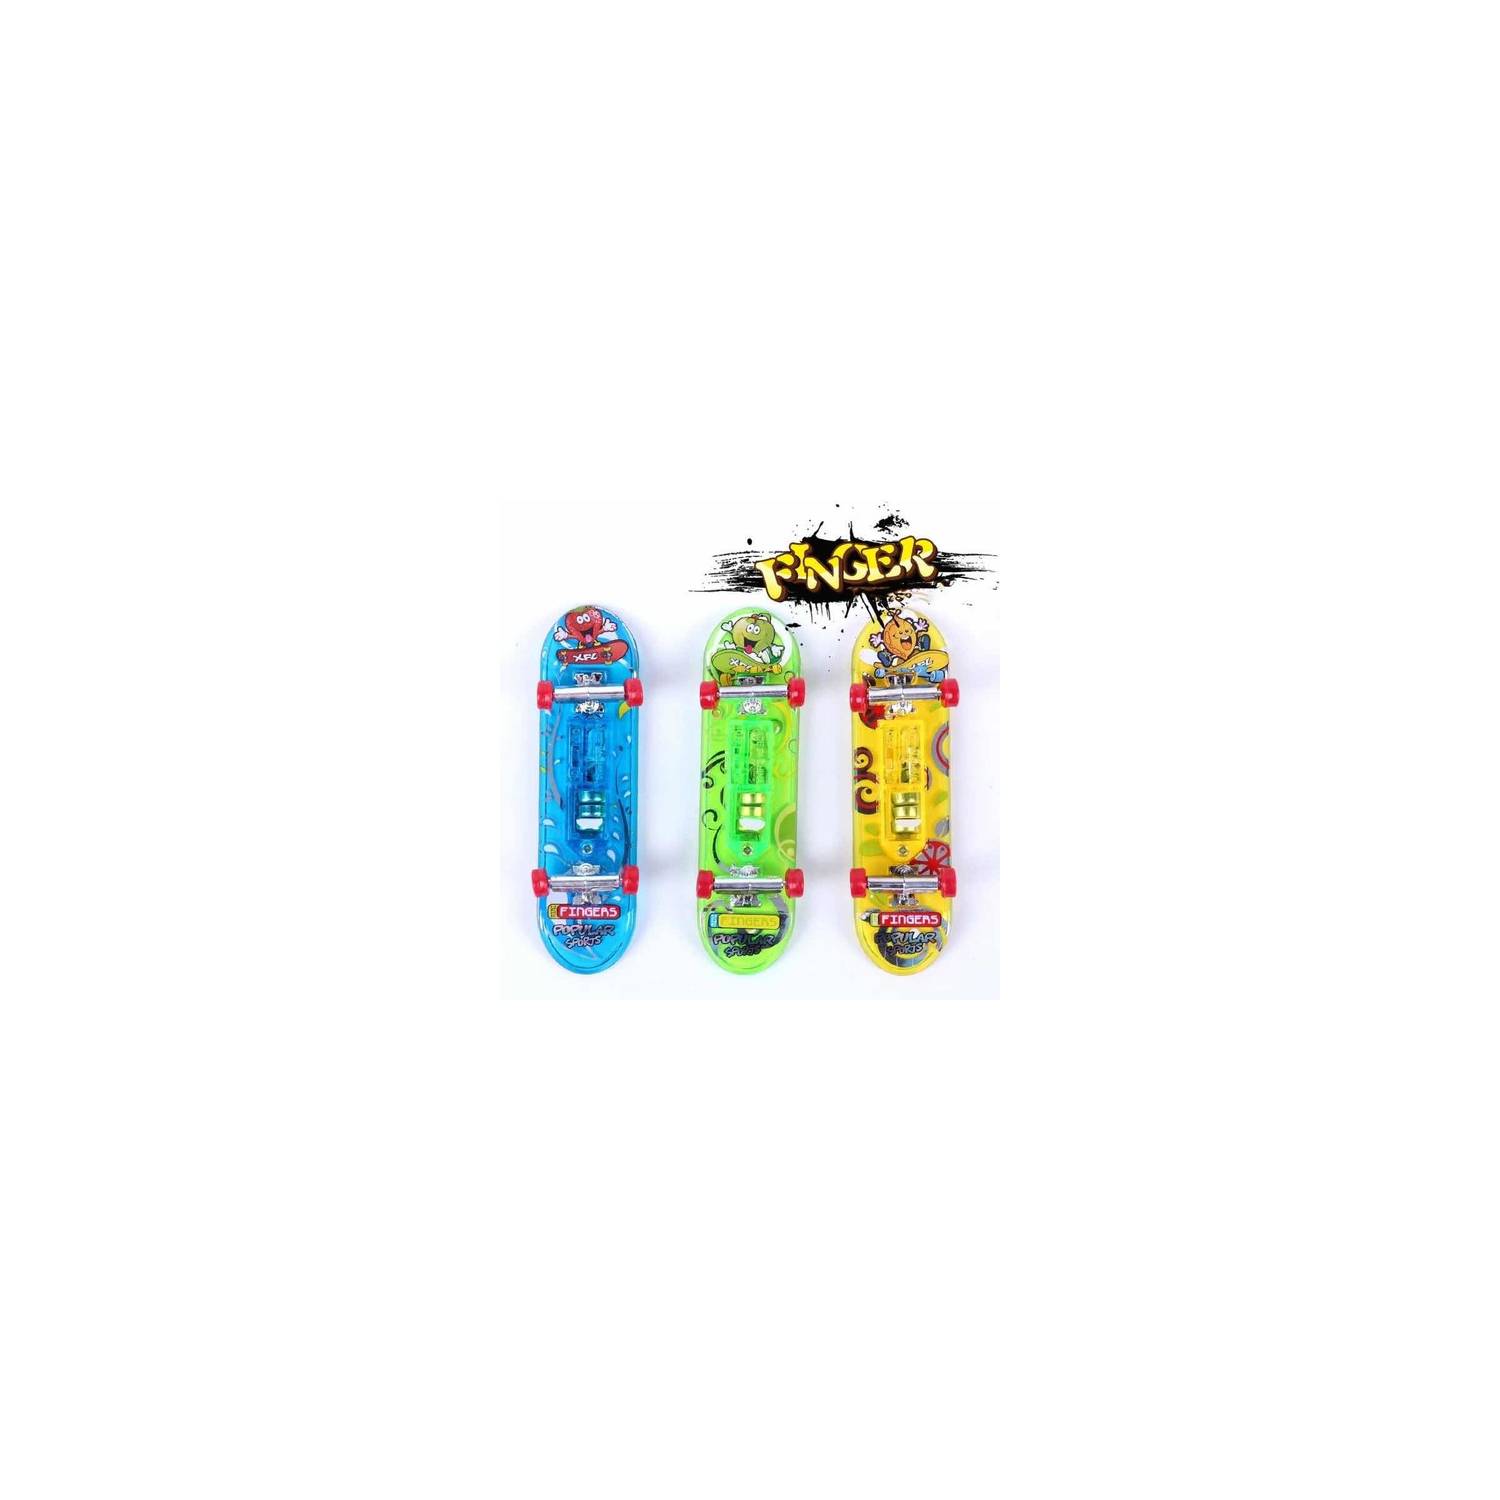 GENERICO Set 6 Mini Juego Skate Para Dedos Patineta